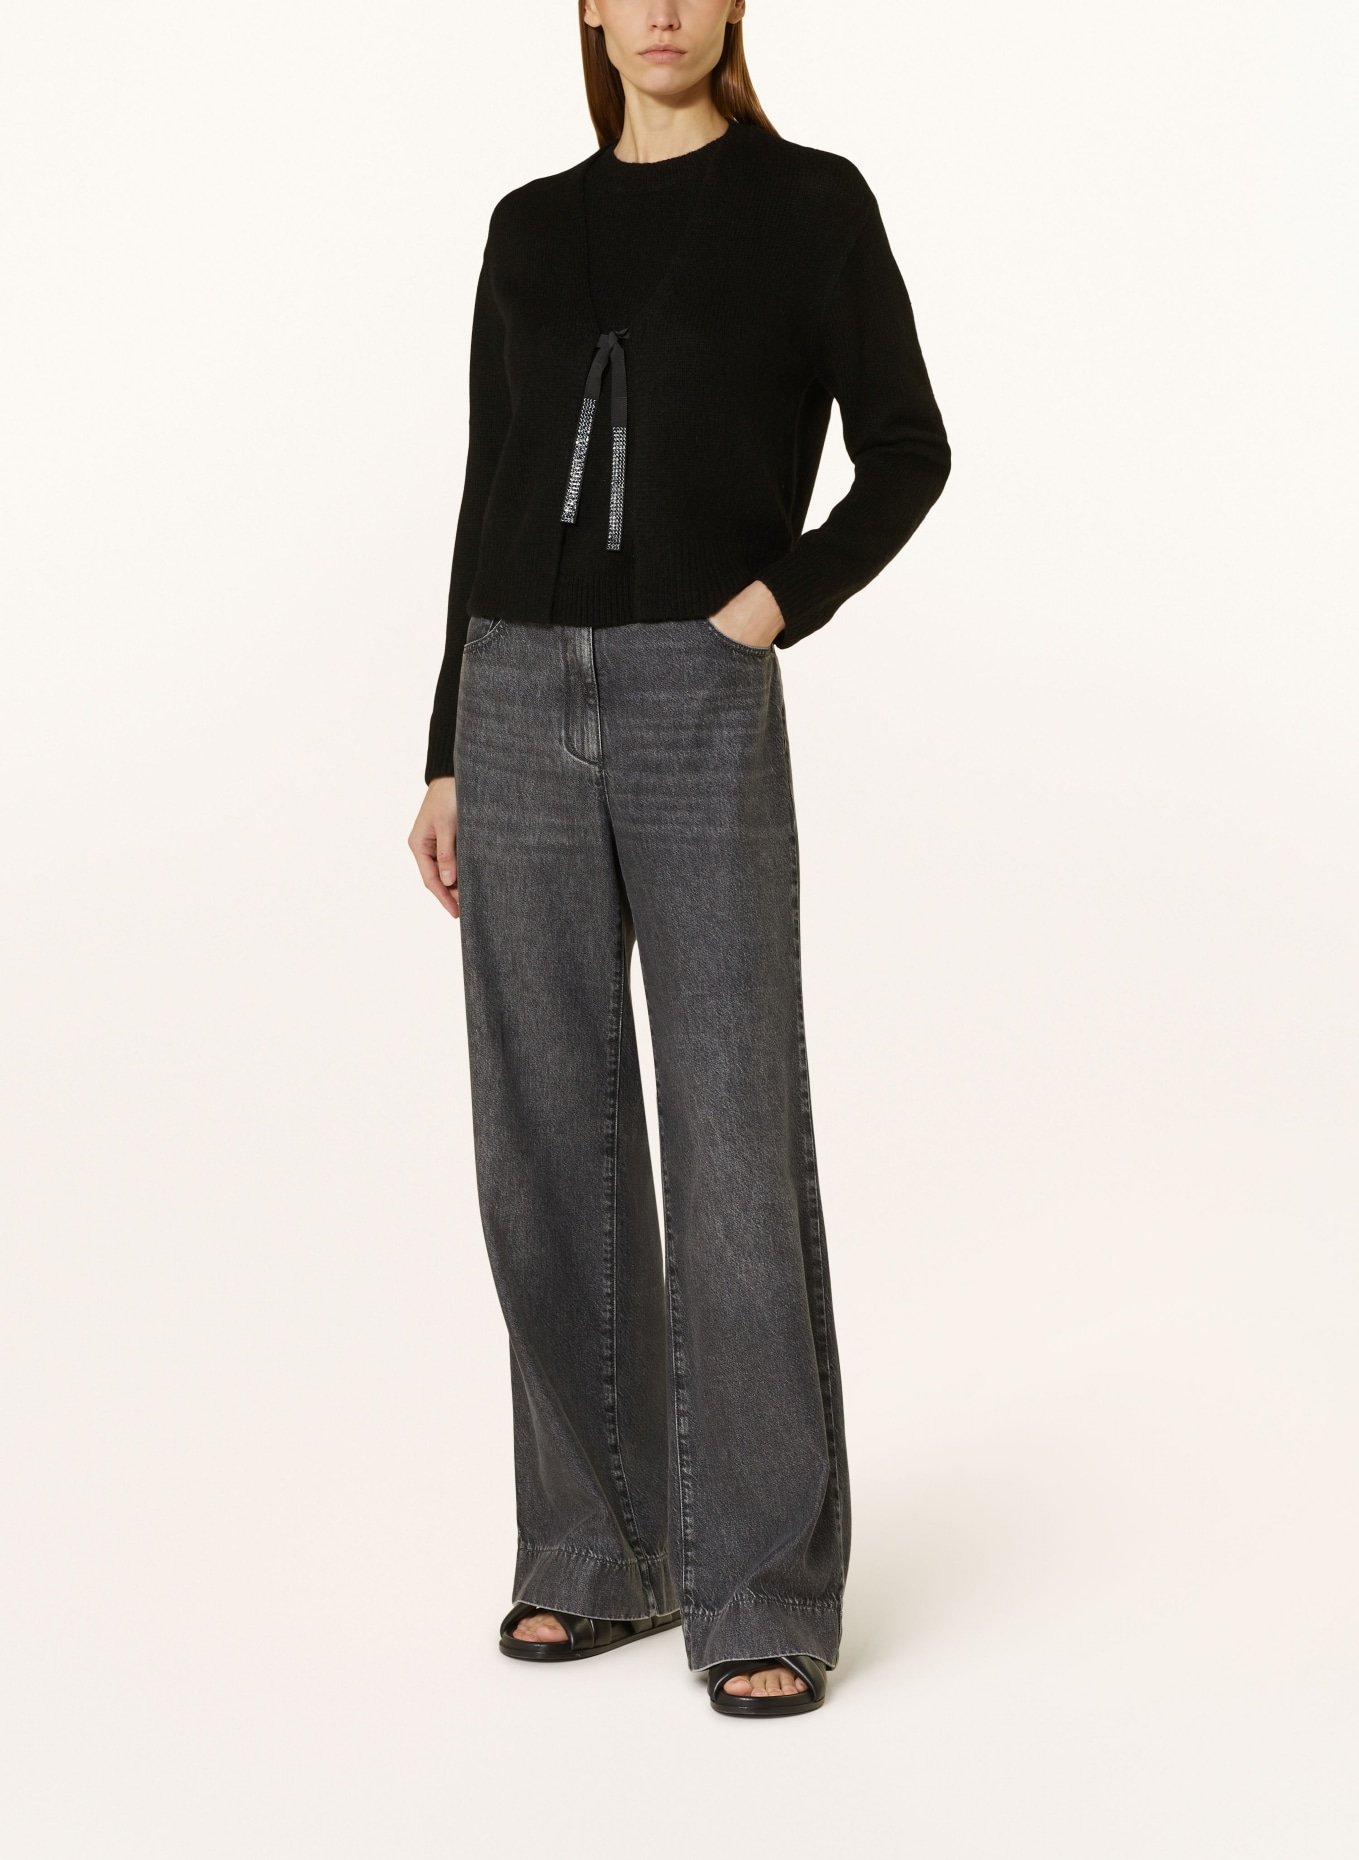 LUISA CERANO Knit cardigan with alpaca, Color: BLACK (Image 2)